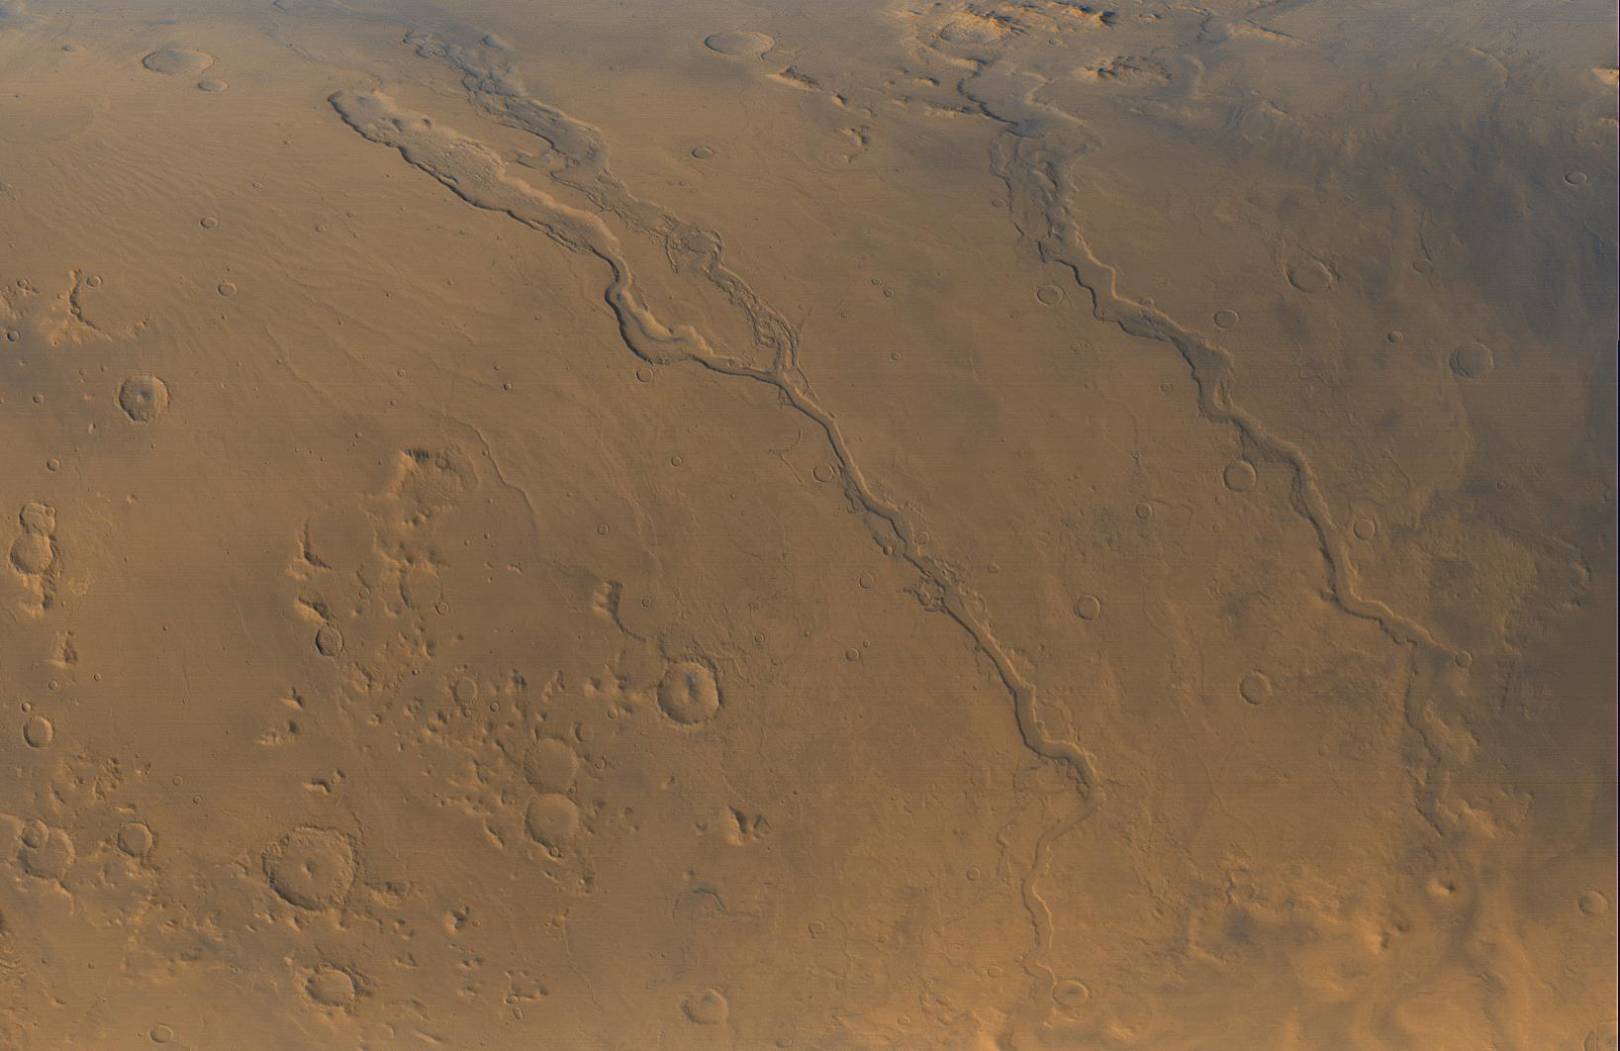 Следы древних речных систем Марса.